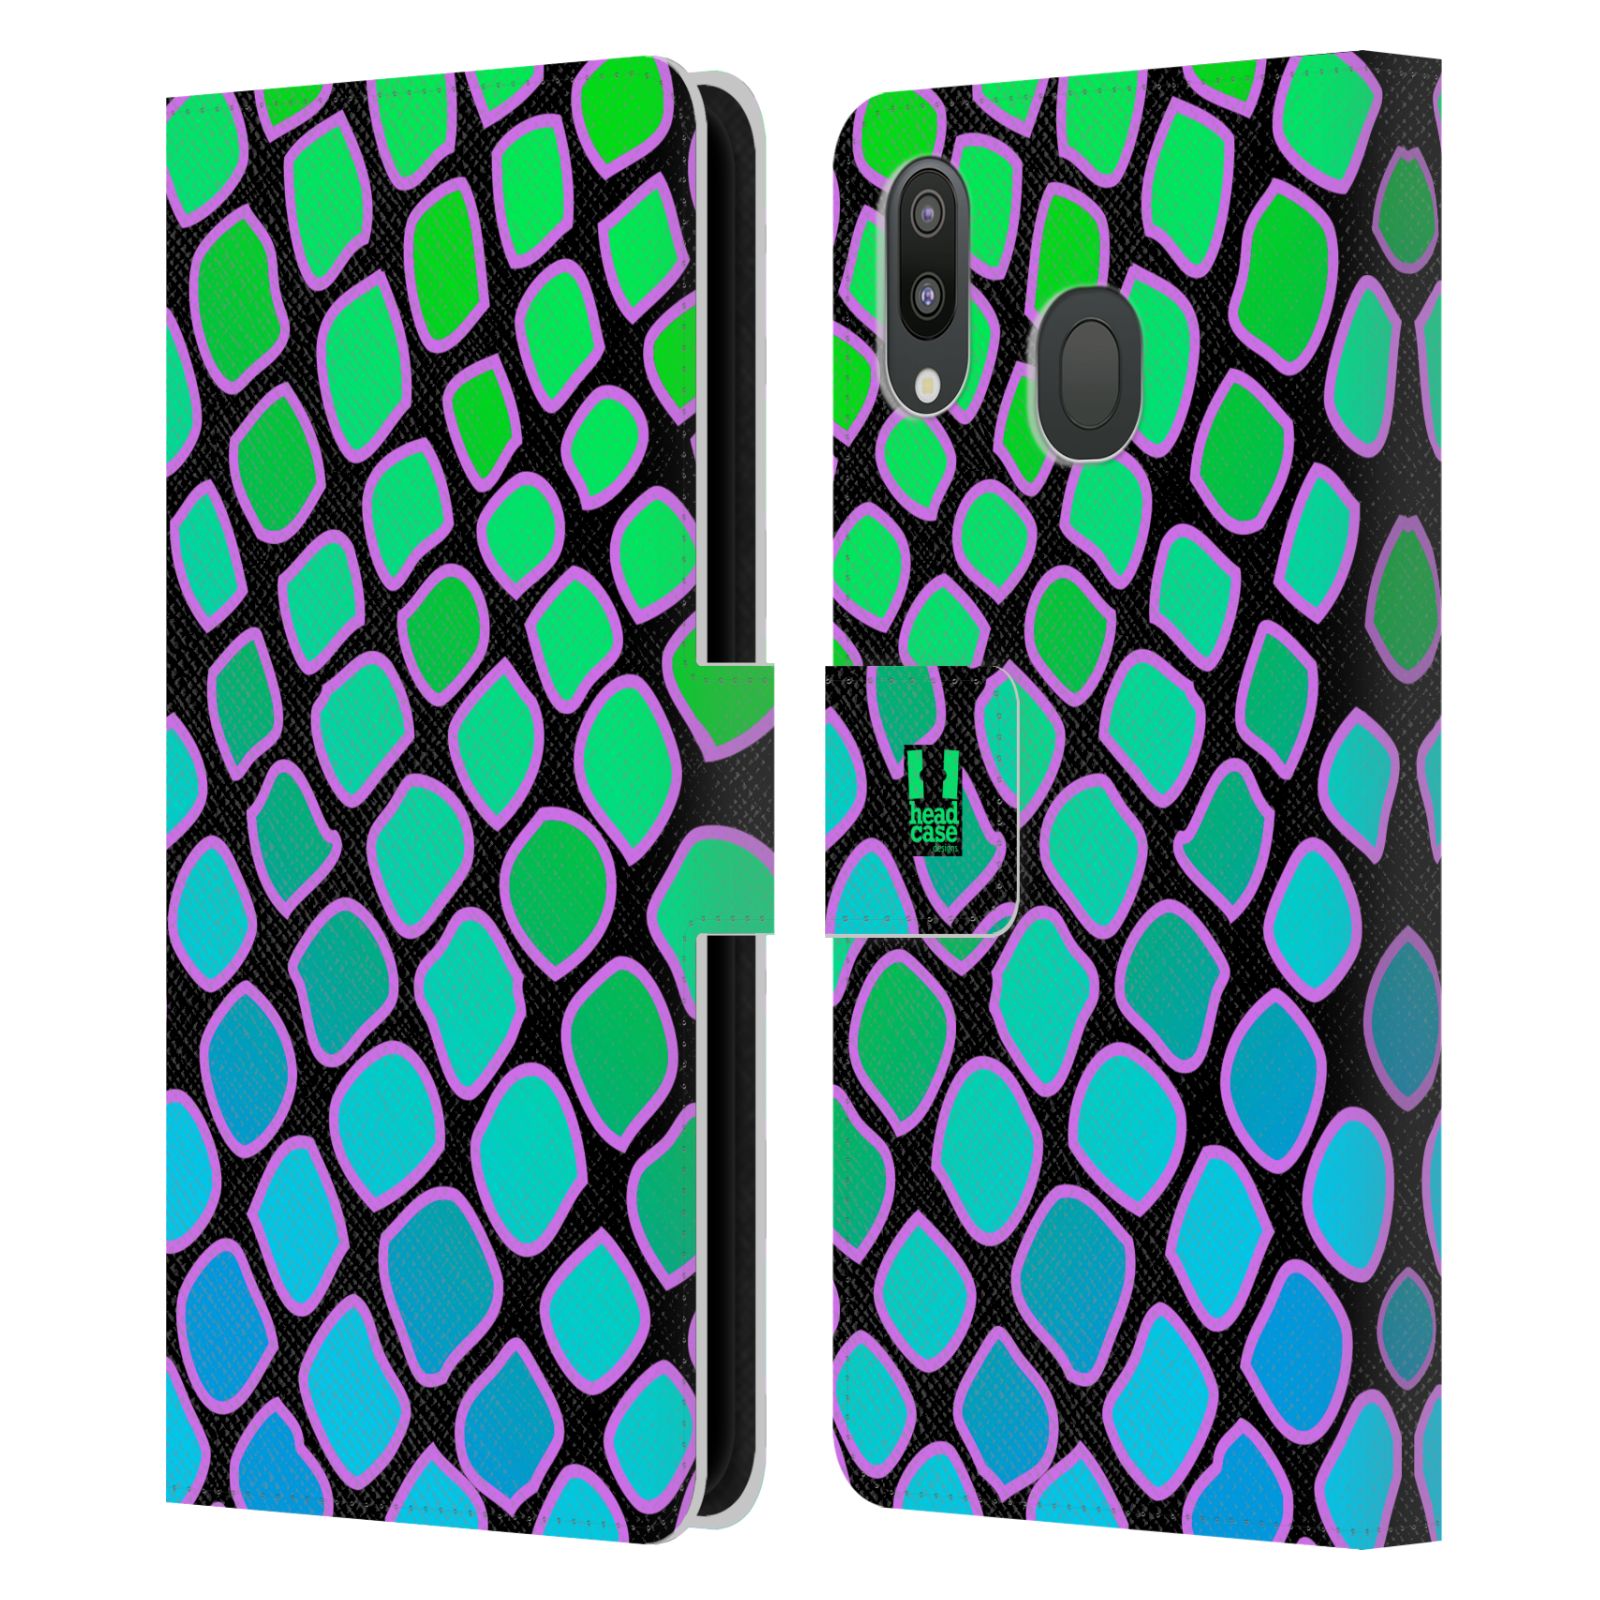 Pouzdro na mobil Samsung Galaxy M20 Zvířecí barevné vzory vodní had modrá a zelená barva AQUA